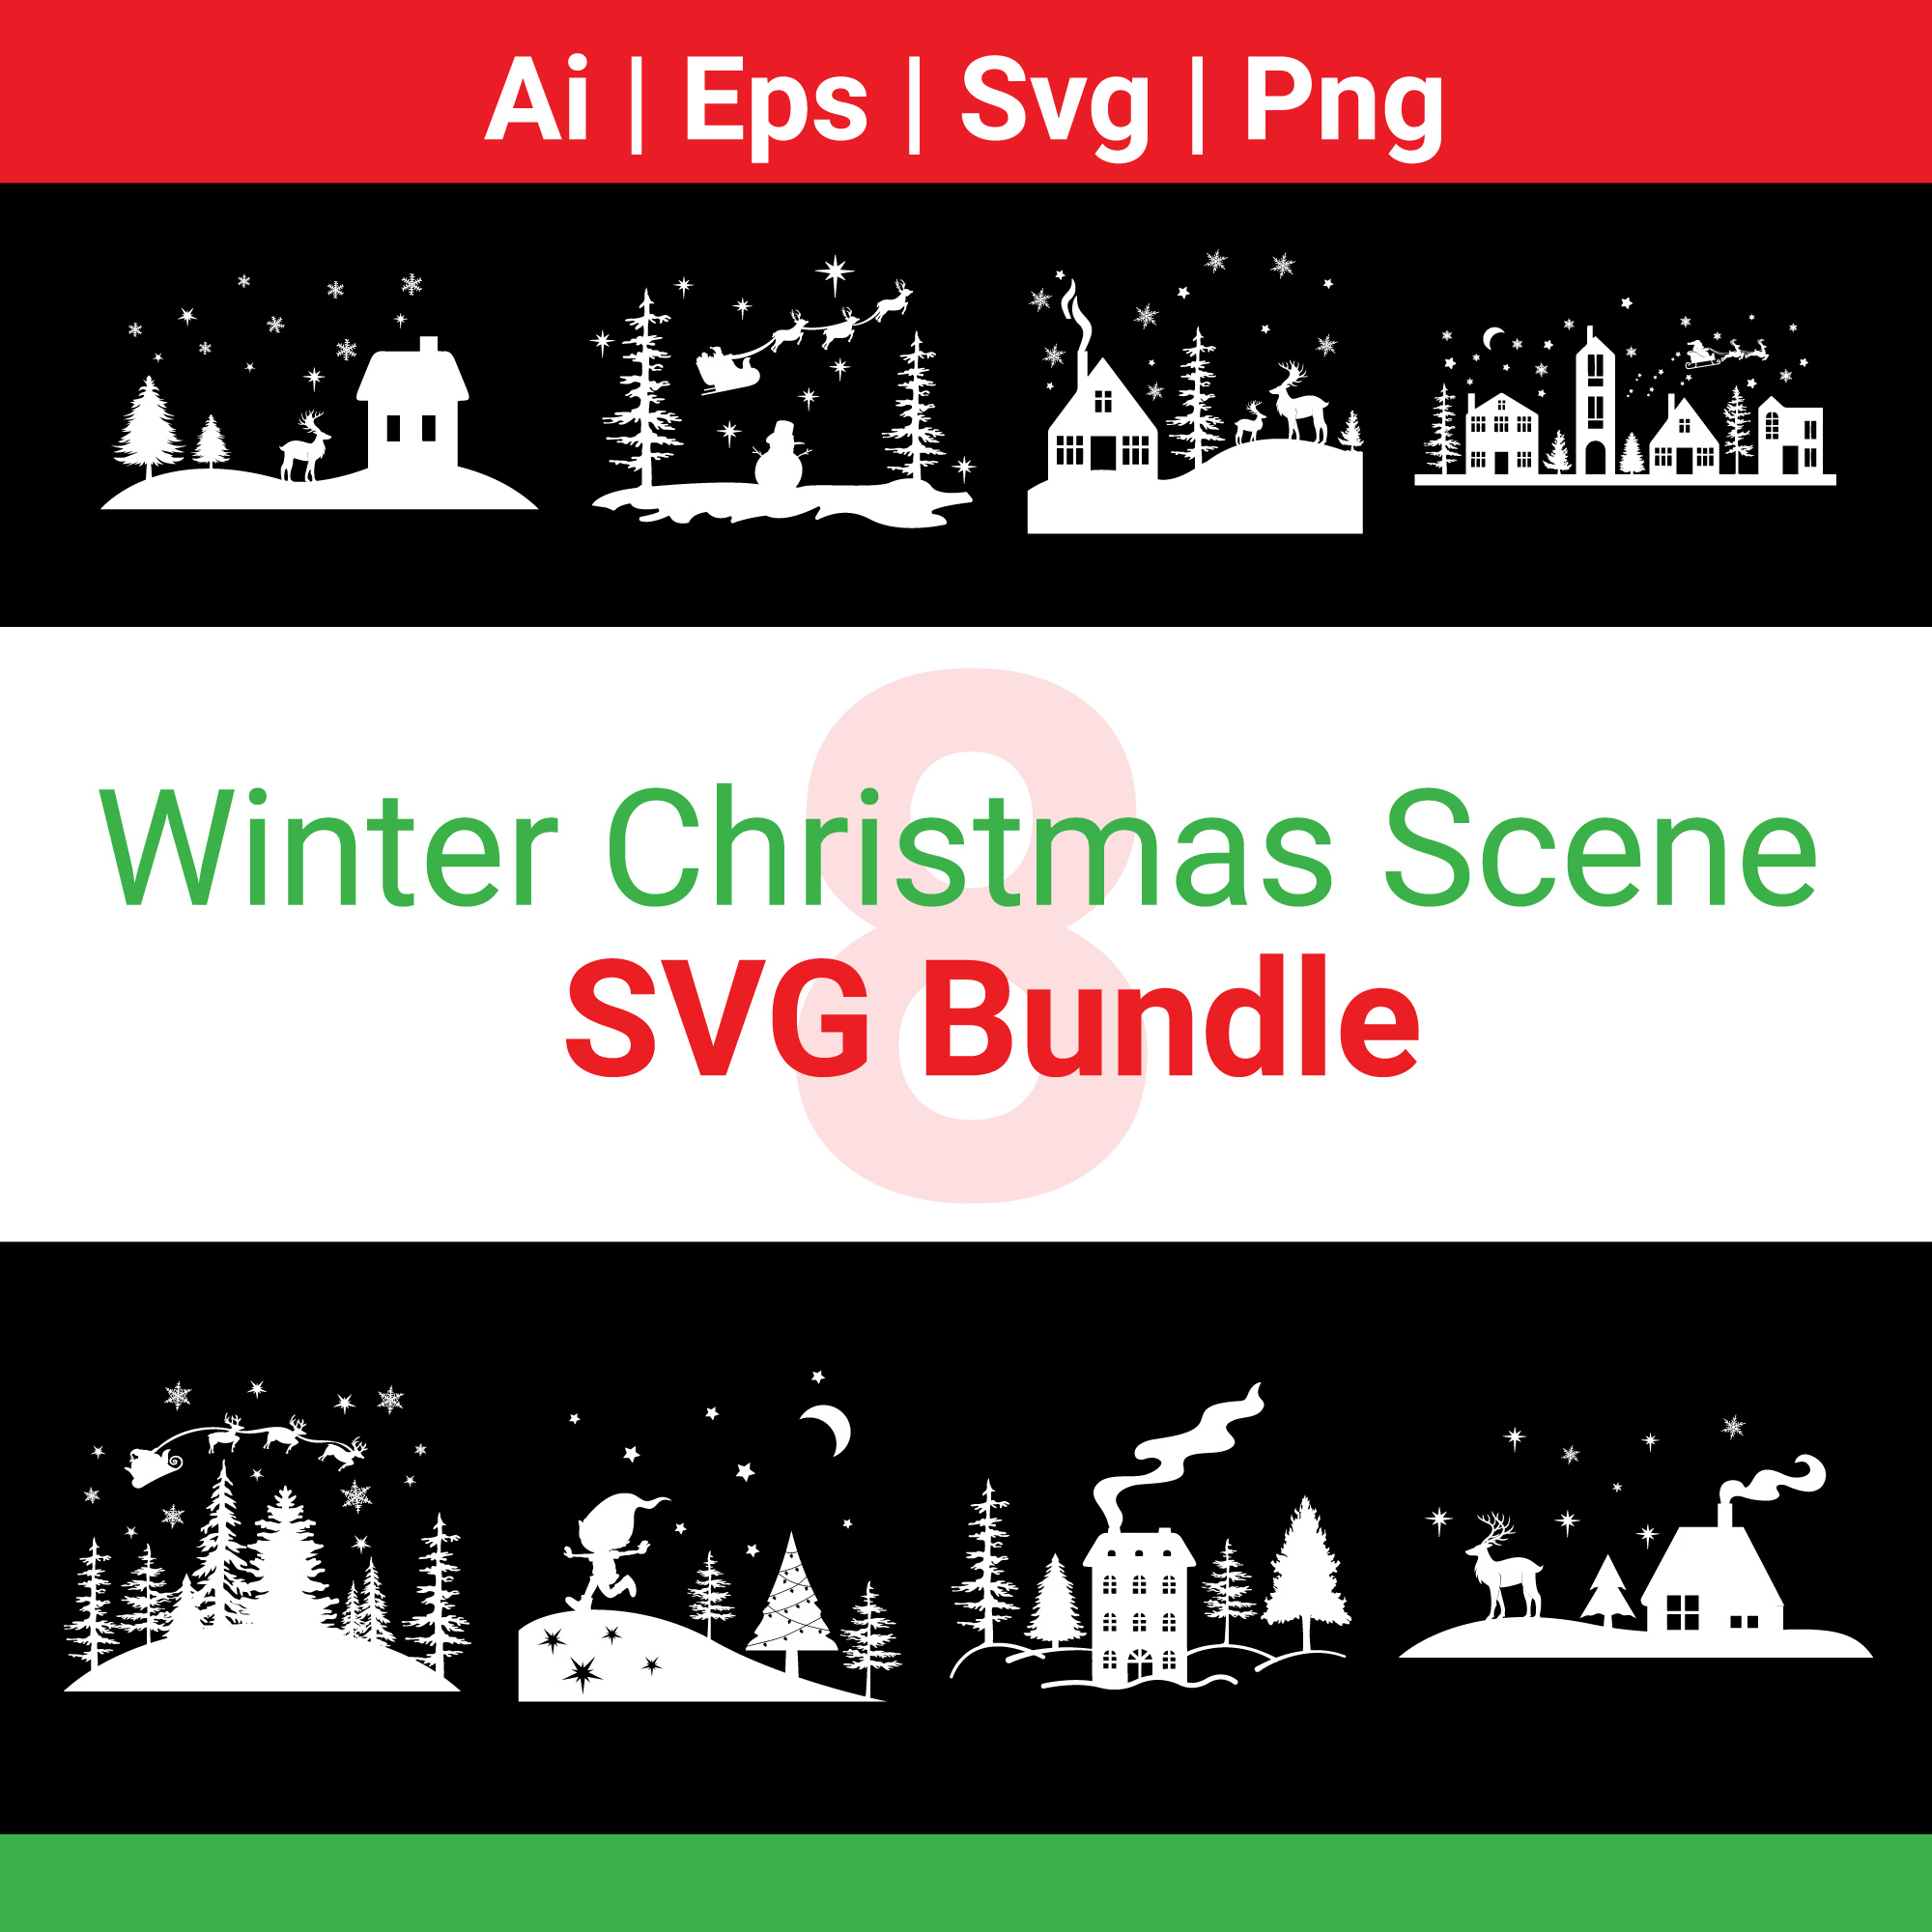 Festive Christmas SVG Design Bundle, Enchanting Winter Landscape SVG Bundle with Santa and Reindeer cover image.